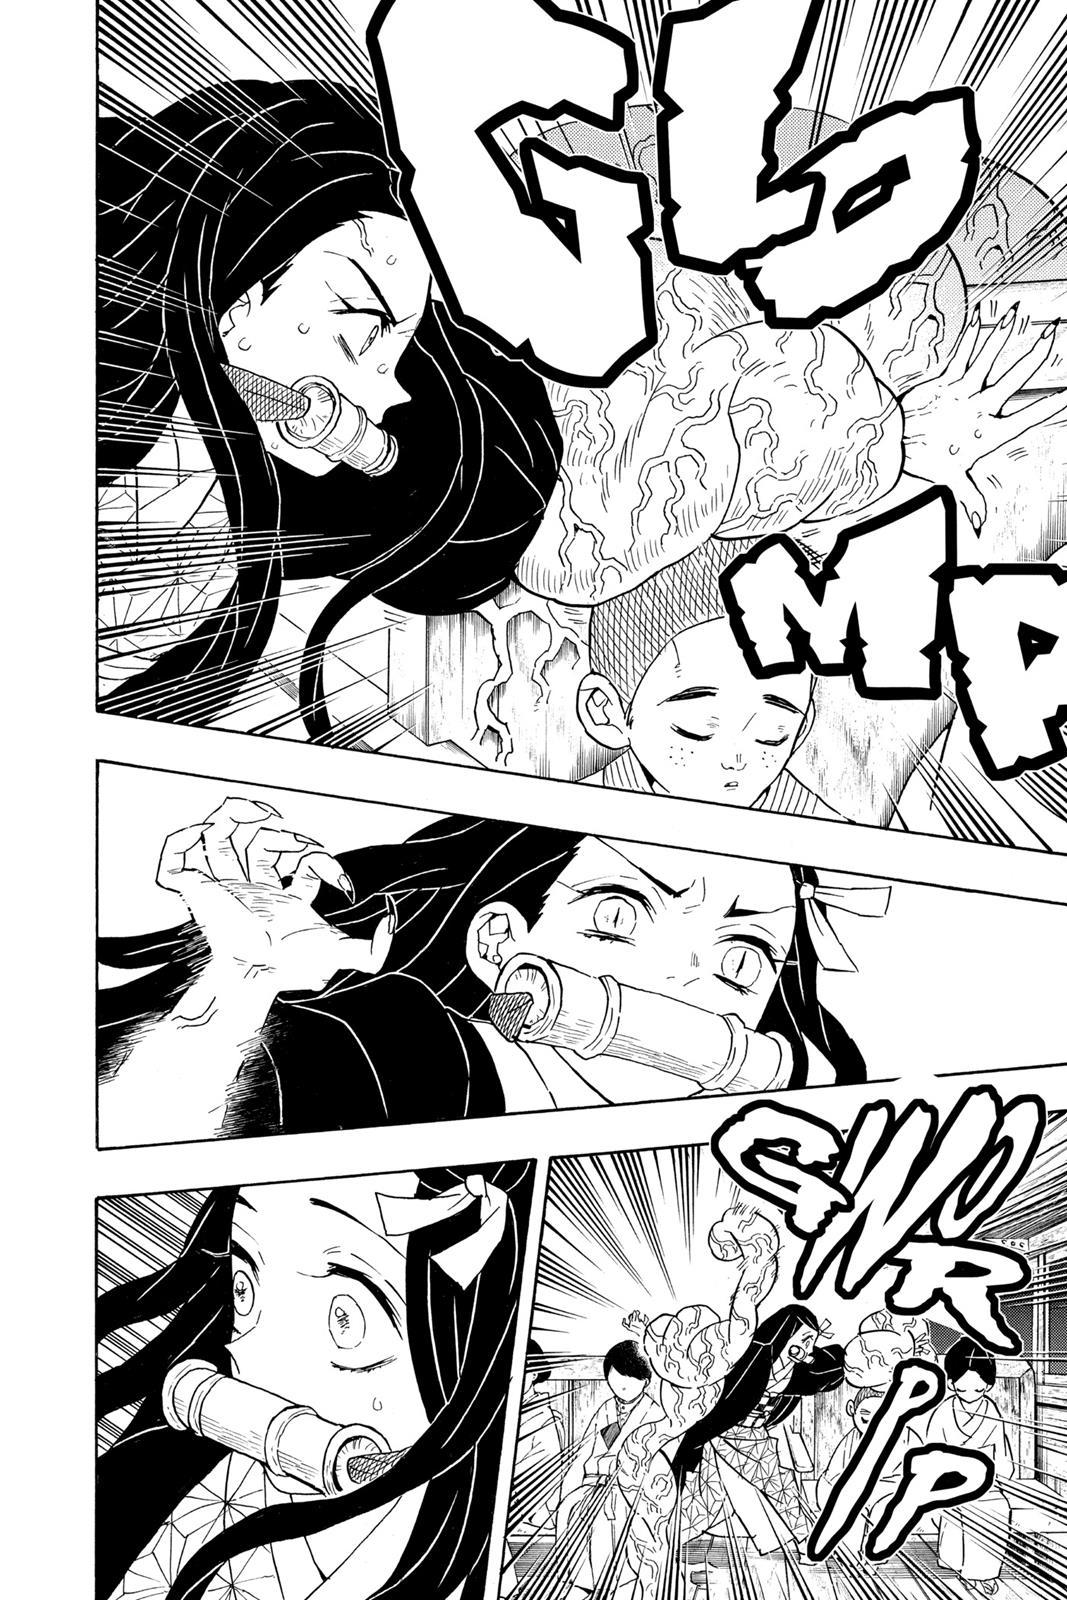 Demon Slayer Manga Manga Chapter - 60 - image 6